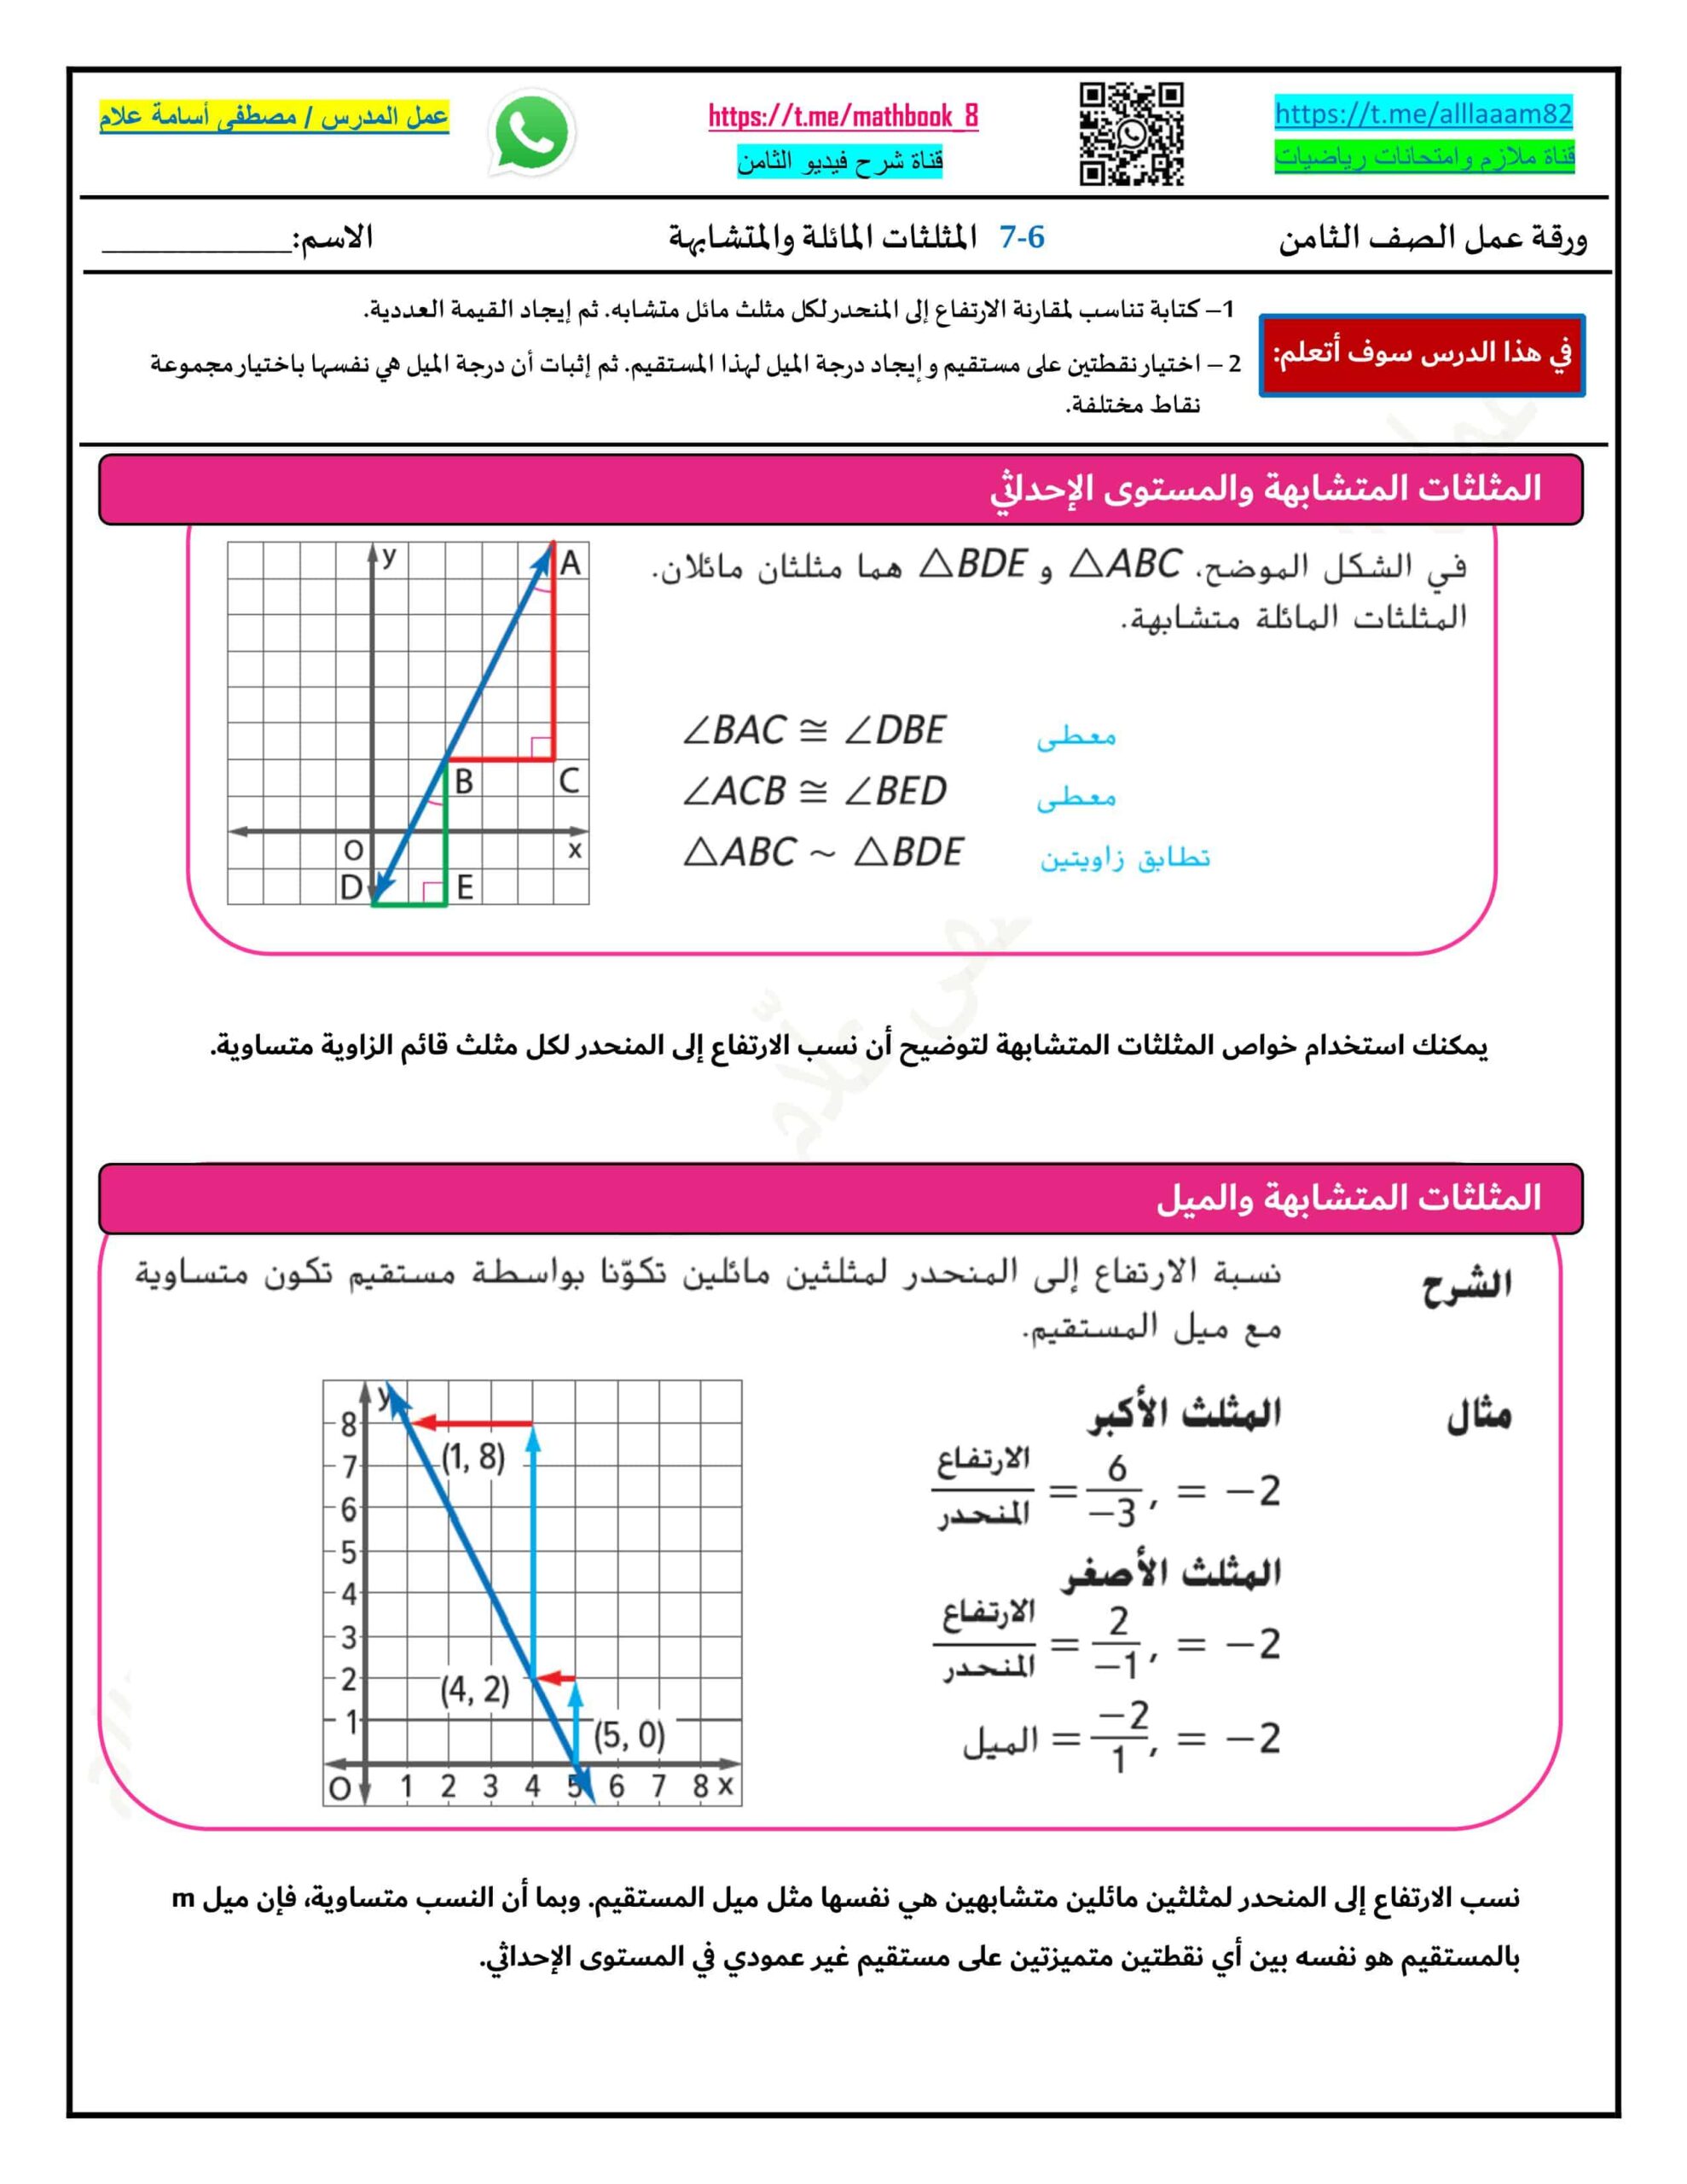 حل ورقة عمل المثلثات المائلة والمتشابهة الرياضيات المتكاملة الصف الثامن